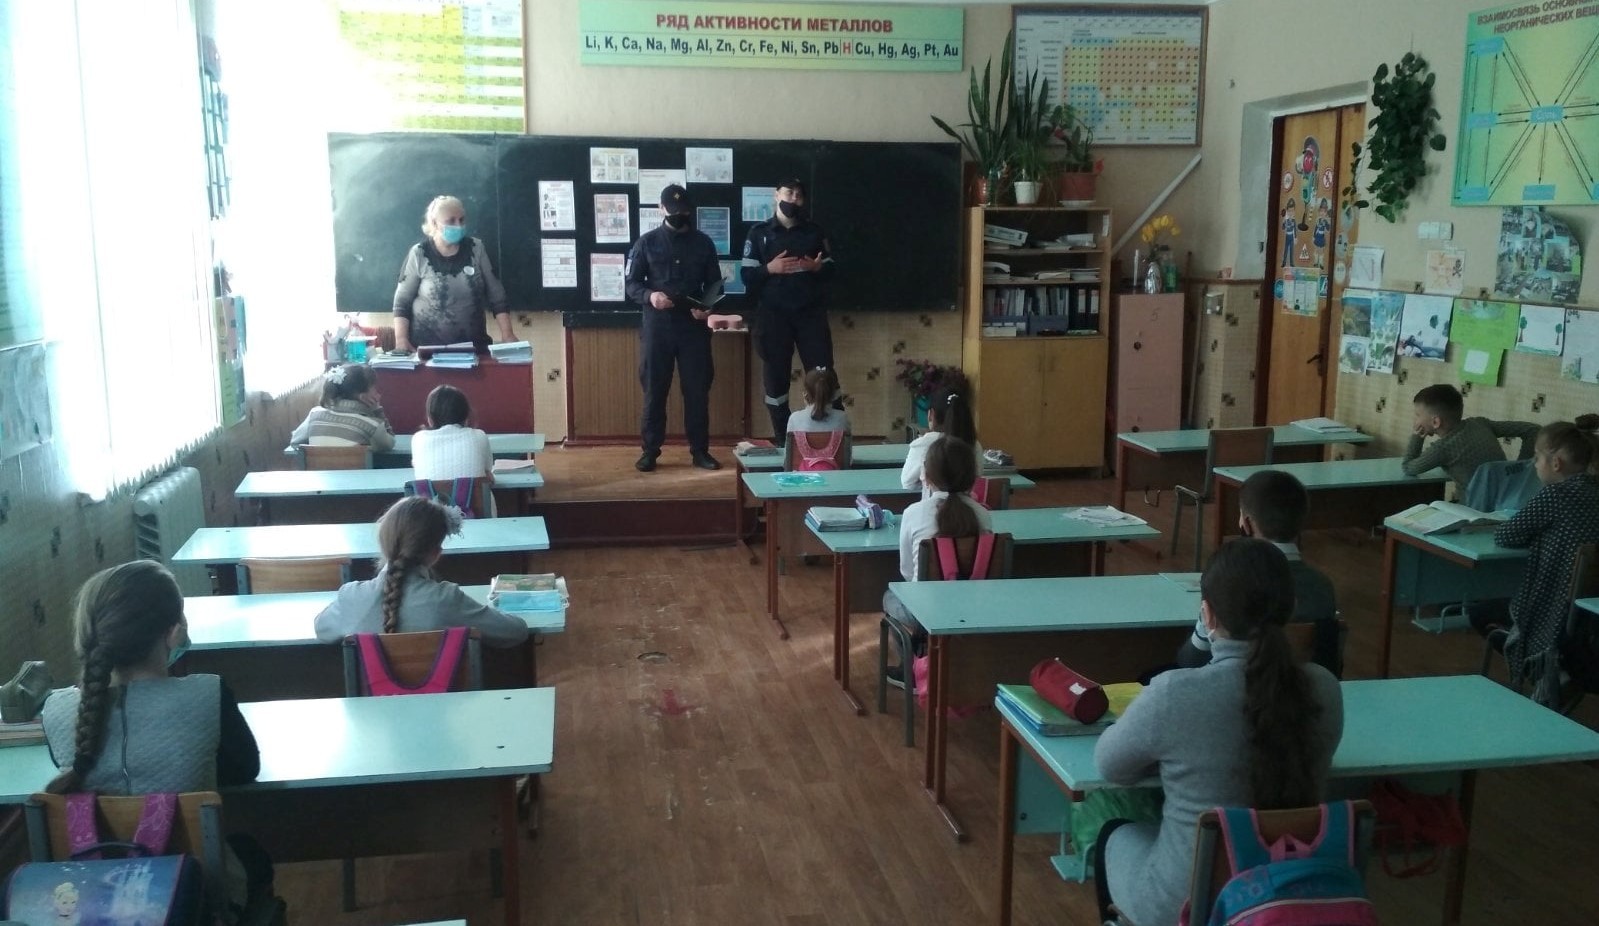 Peste 140 de copii din municipiul Bălți au fost informați de către salvatori despre pericolele care le pot afecta viața în perioada vacanței de vară